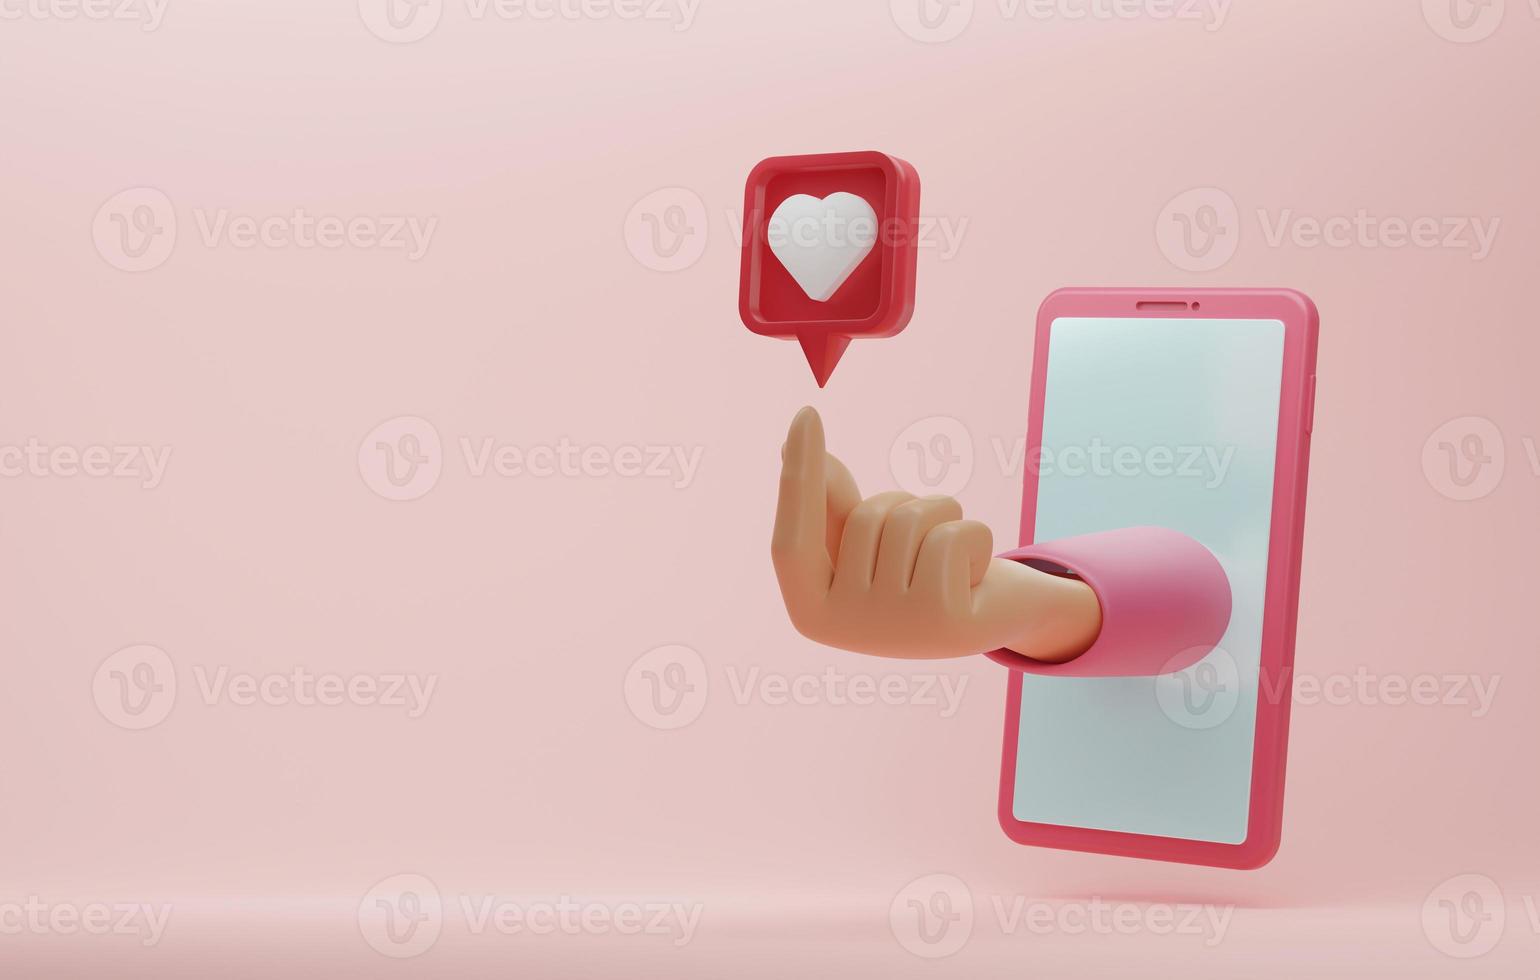 símbolo de corazón hecho a mano con icono de corazón sobre la pantalla del smartphone en fondo rosa. foto